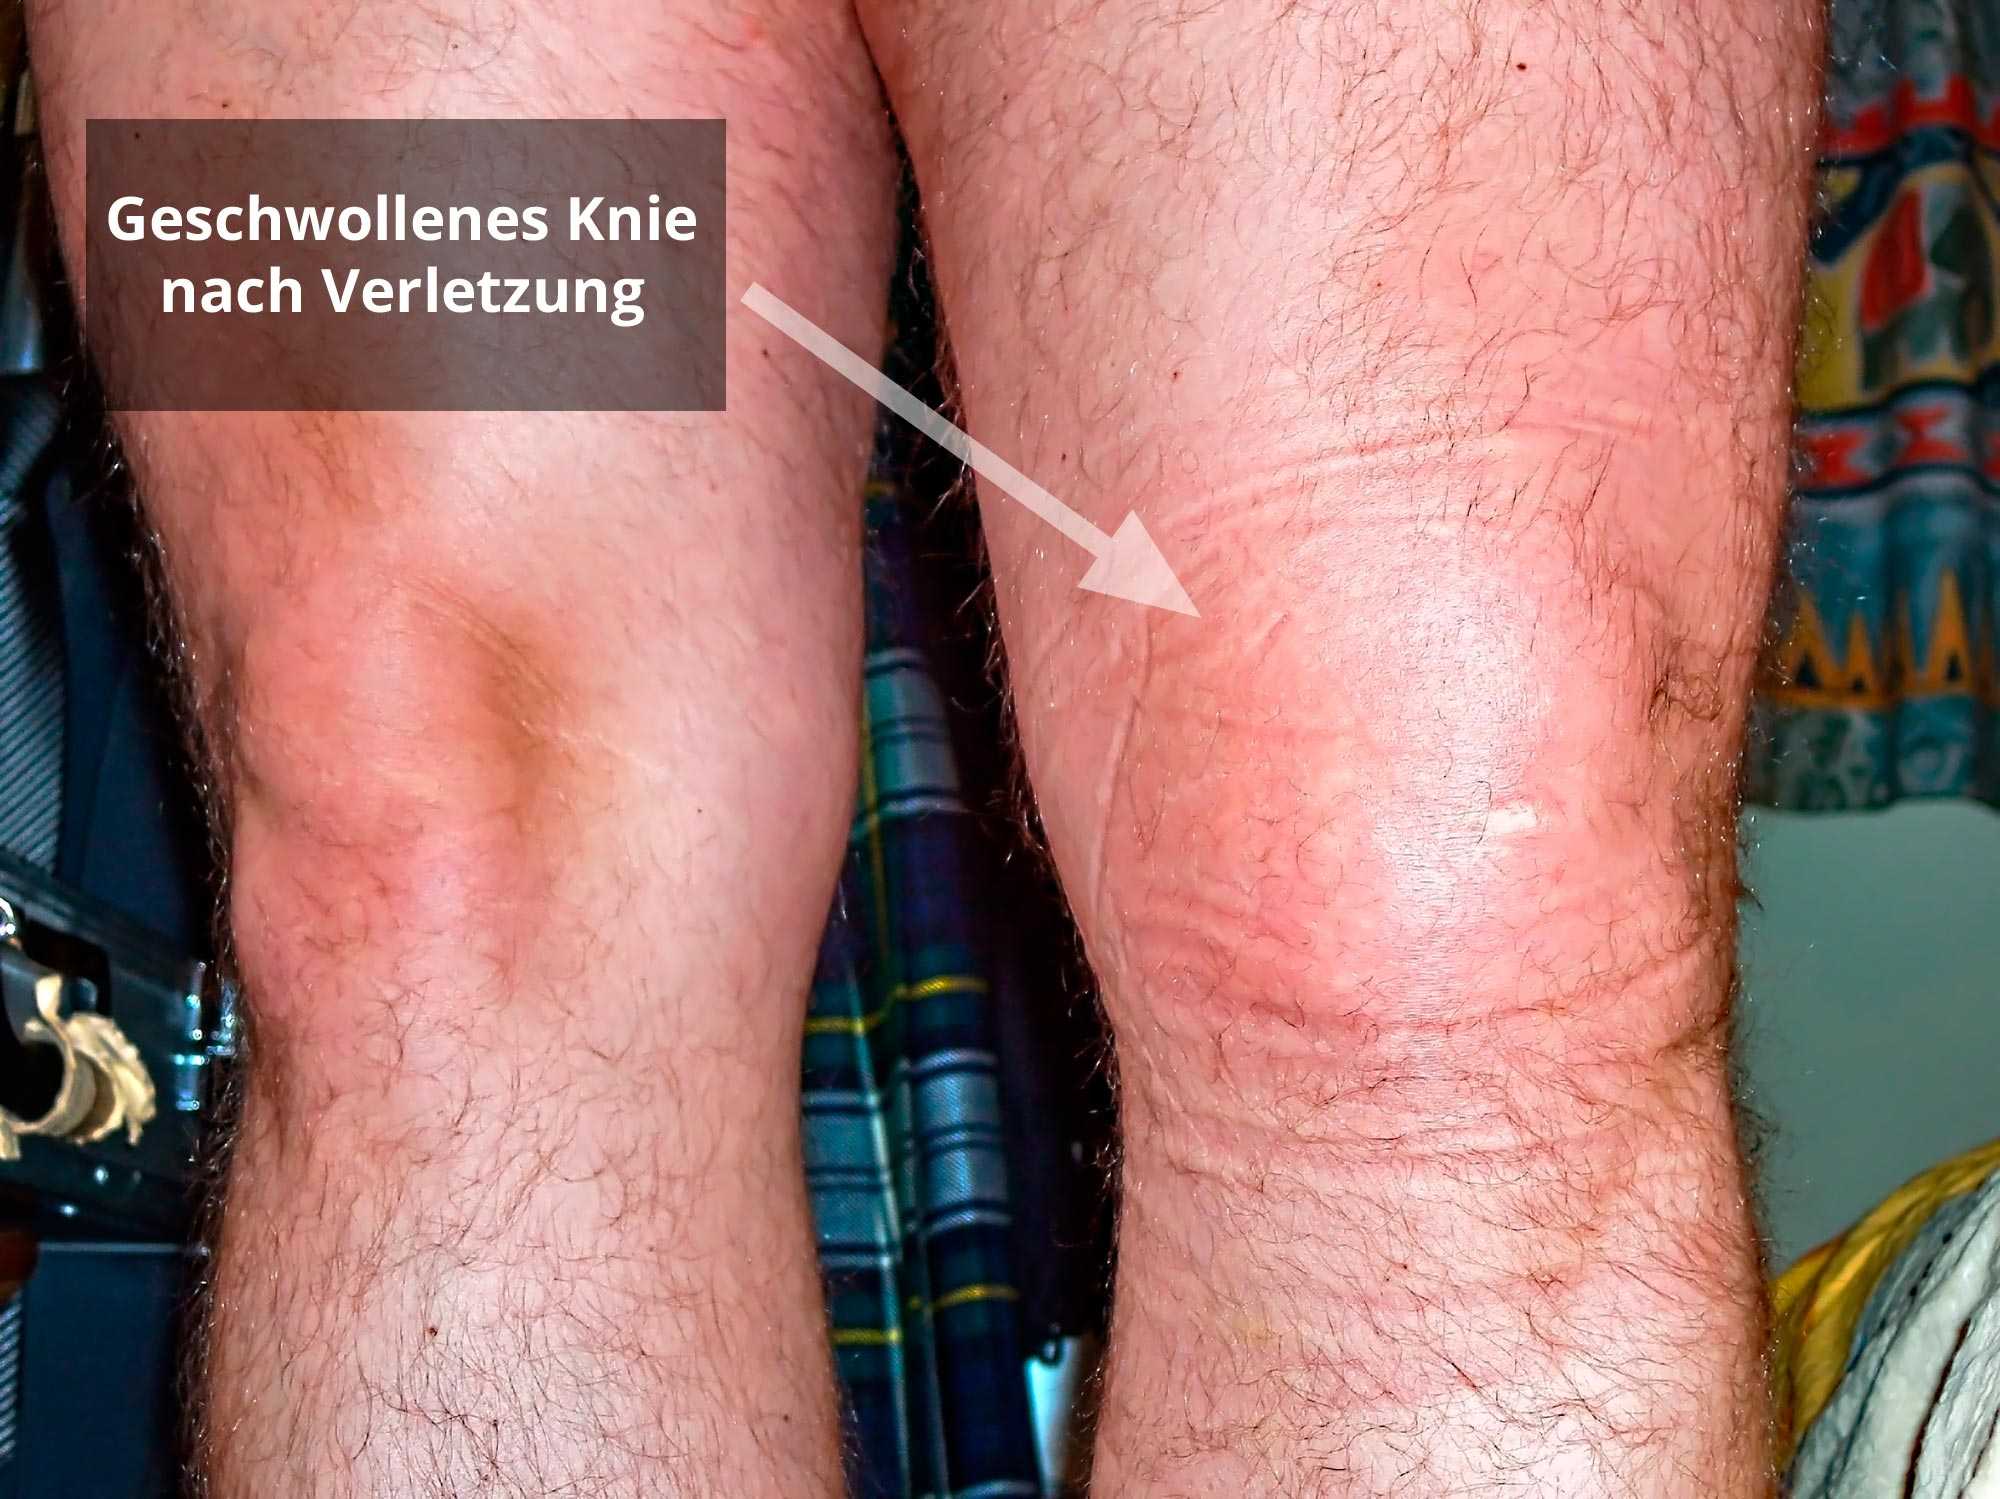 Knie fäden ziehen Arthroskopie Knie: